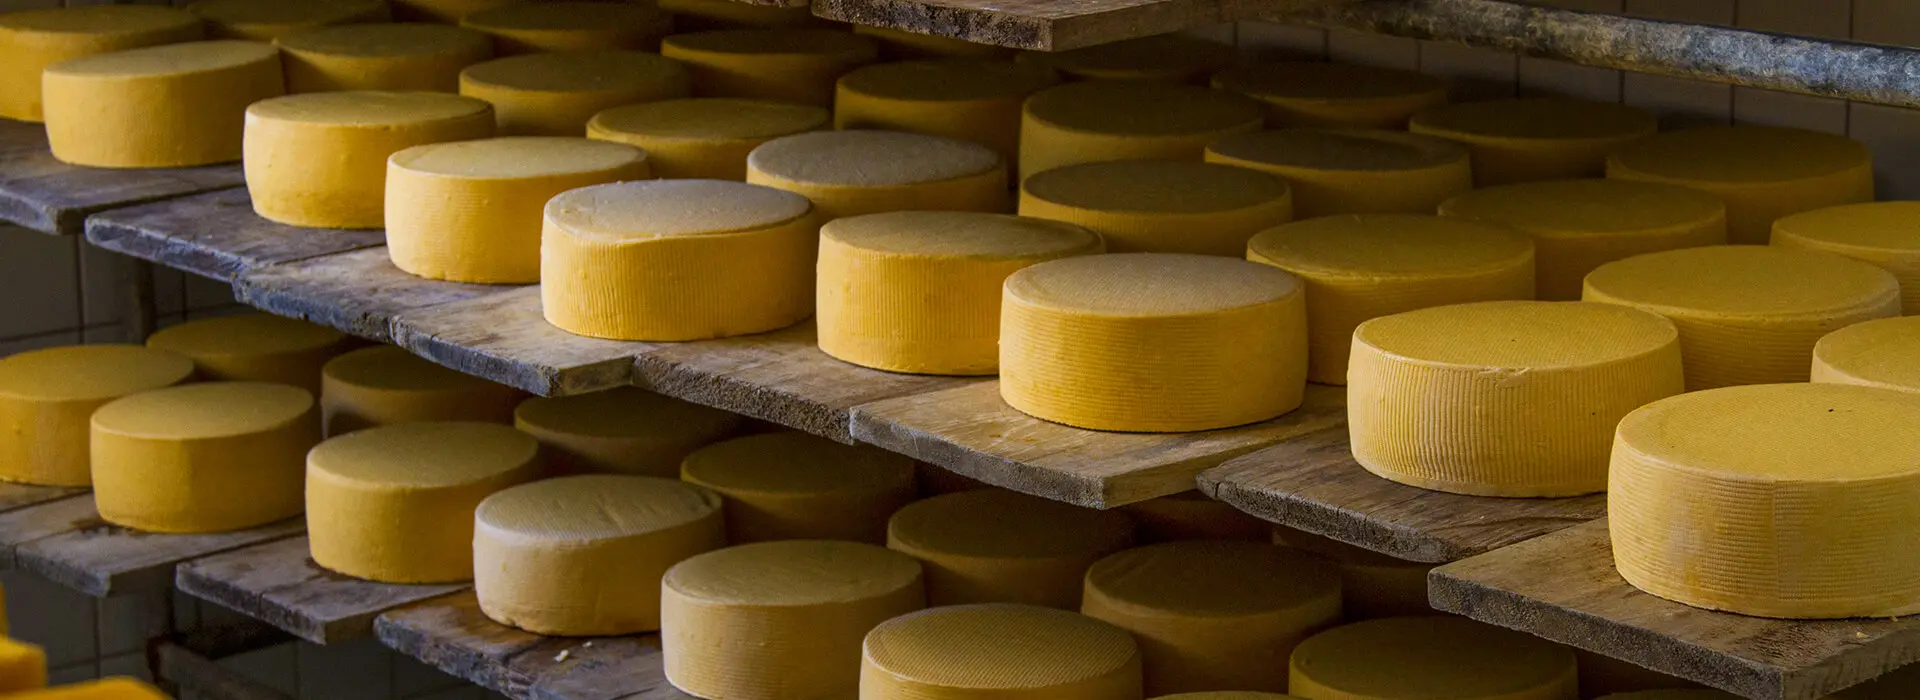 quesos de guaranda - Qué tipo de queso es el más reconocido de Salinas de Guaranda